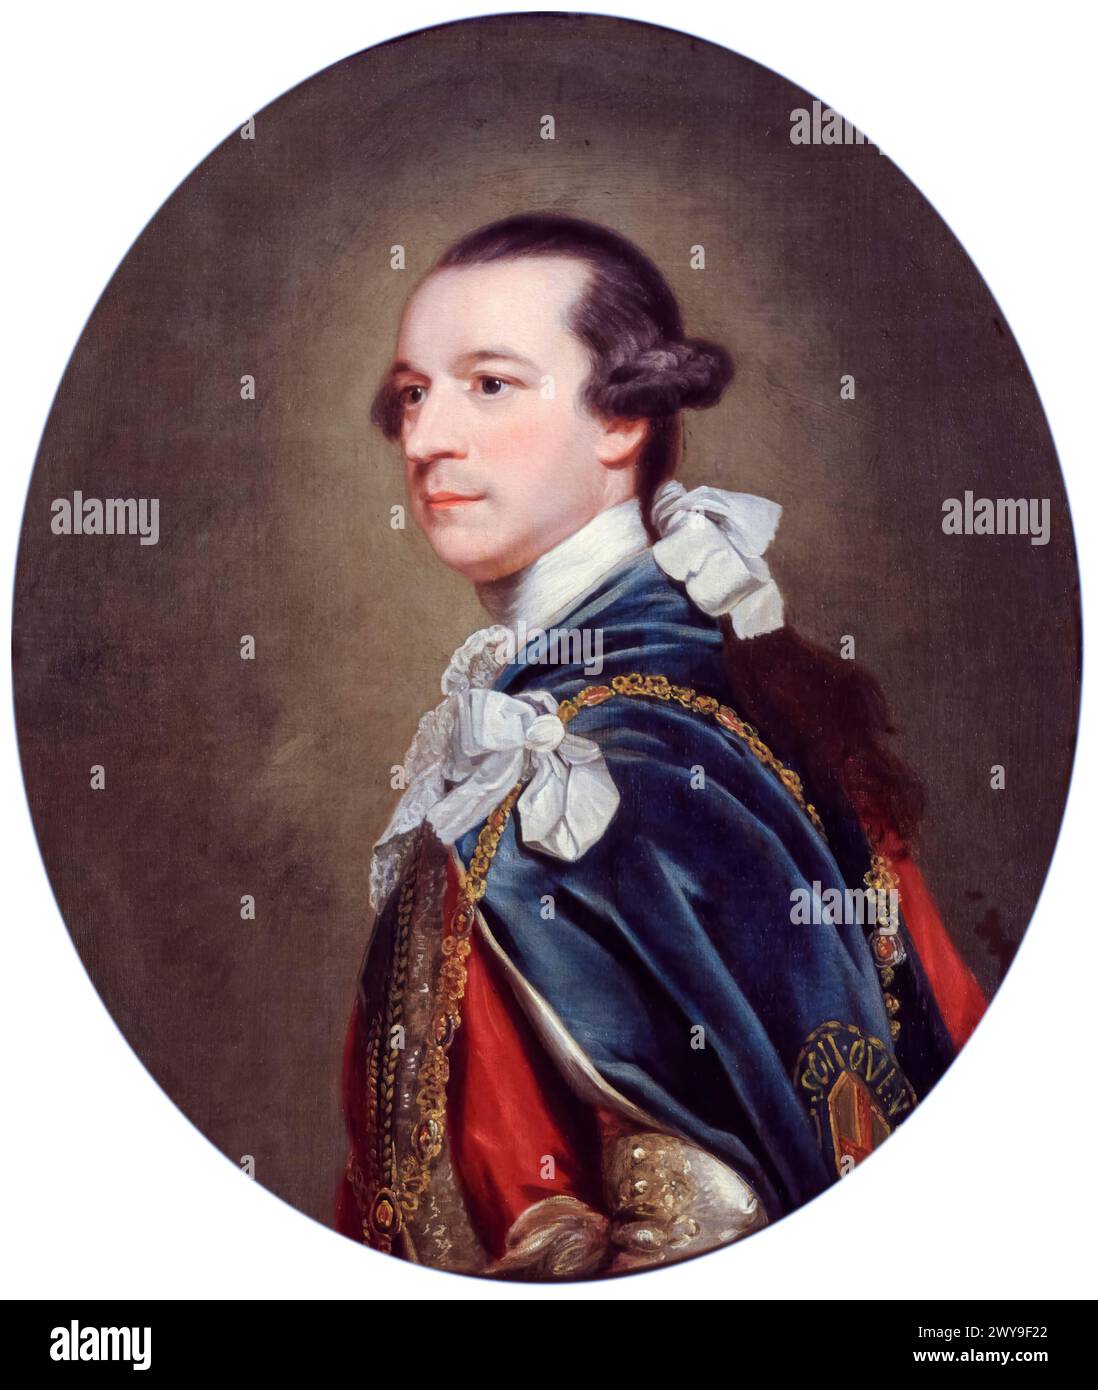 Charles Watson-Wentworth, II marchese di Rockingham (1730-1782), politico Whig e primo ministro della Gran Bretagna due volte dal 1765-1766 e tre mesi nel 1782, ritratto a olio su tela dopo Sir Joshua Reynolds, circa 1768 Foto Stock